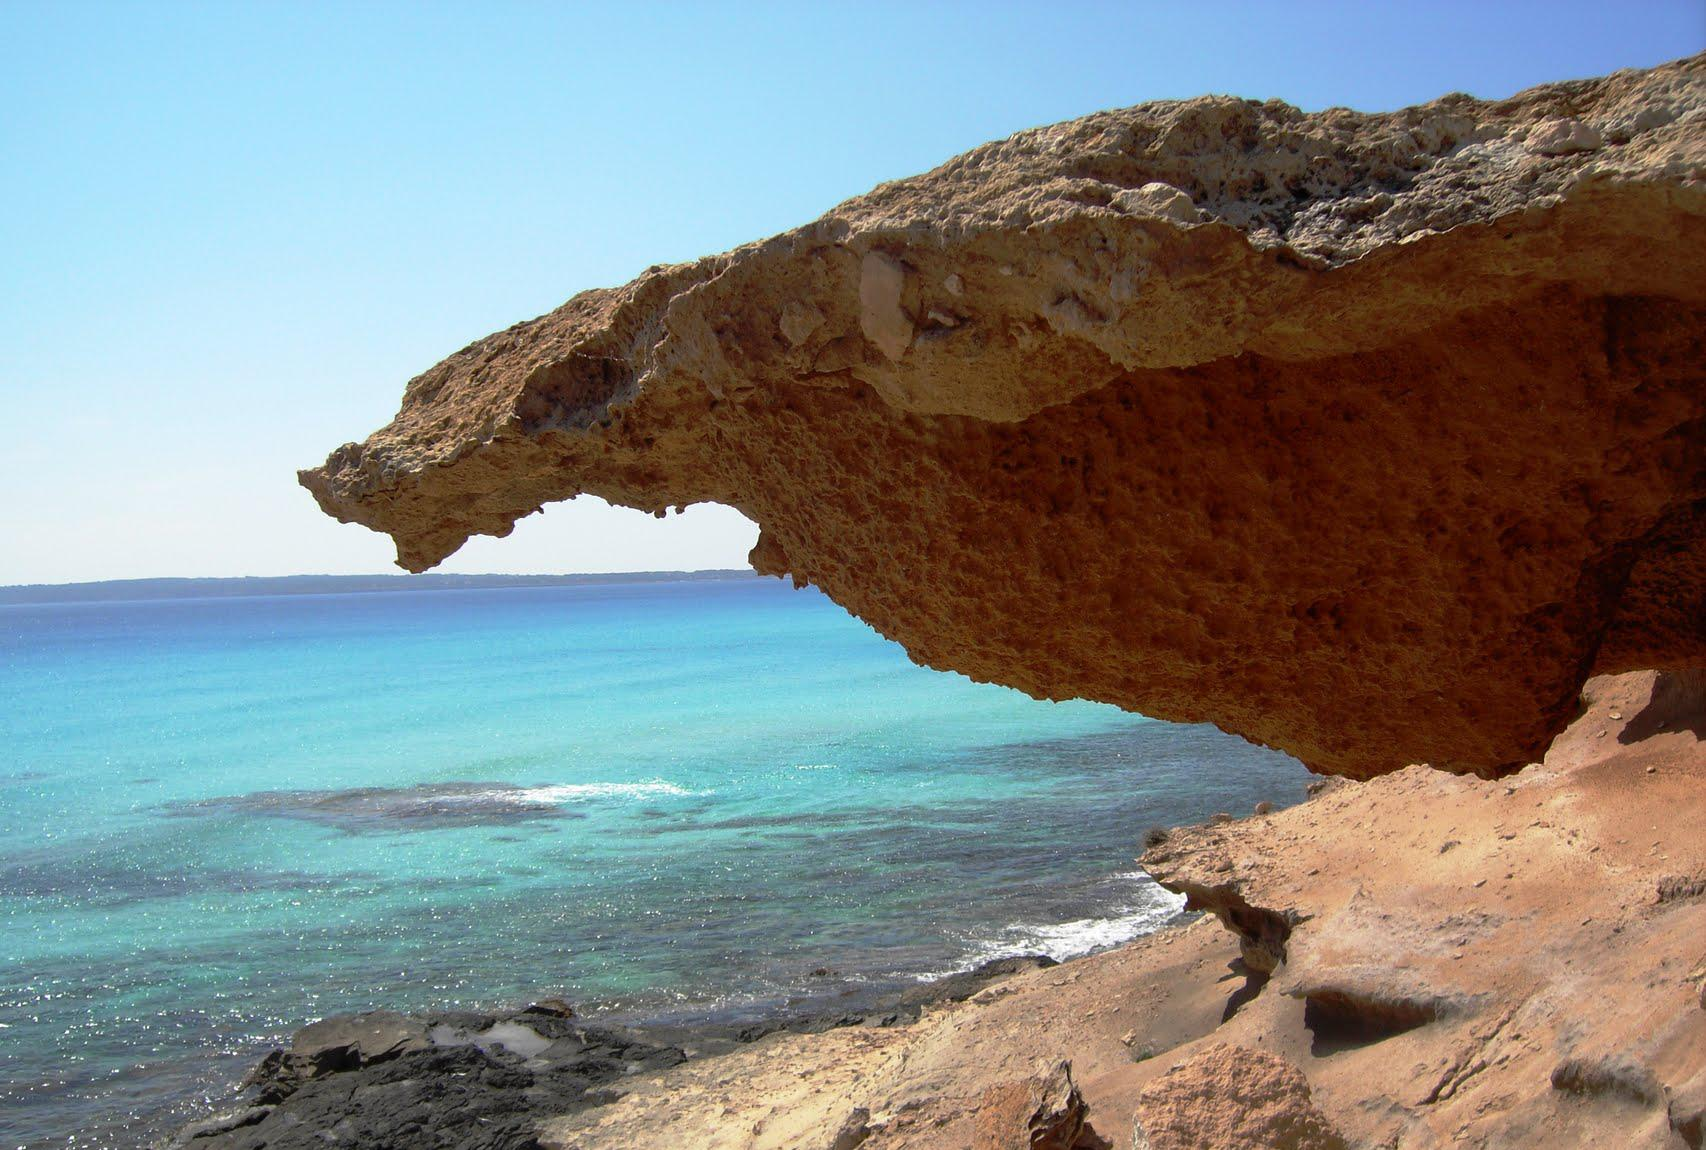 Formas de erosión costera en las rocas detrítico carbonatadas de la